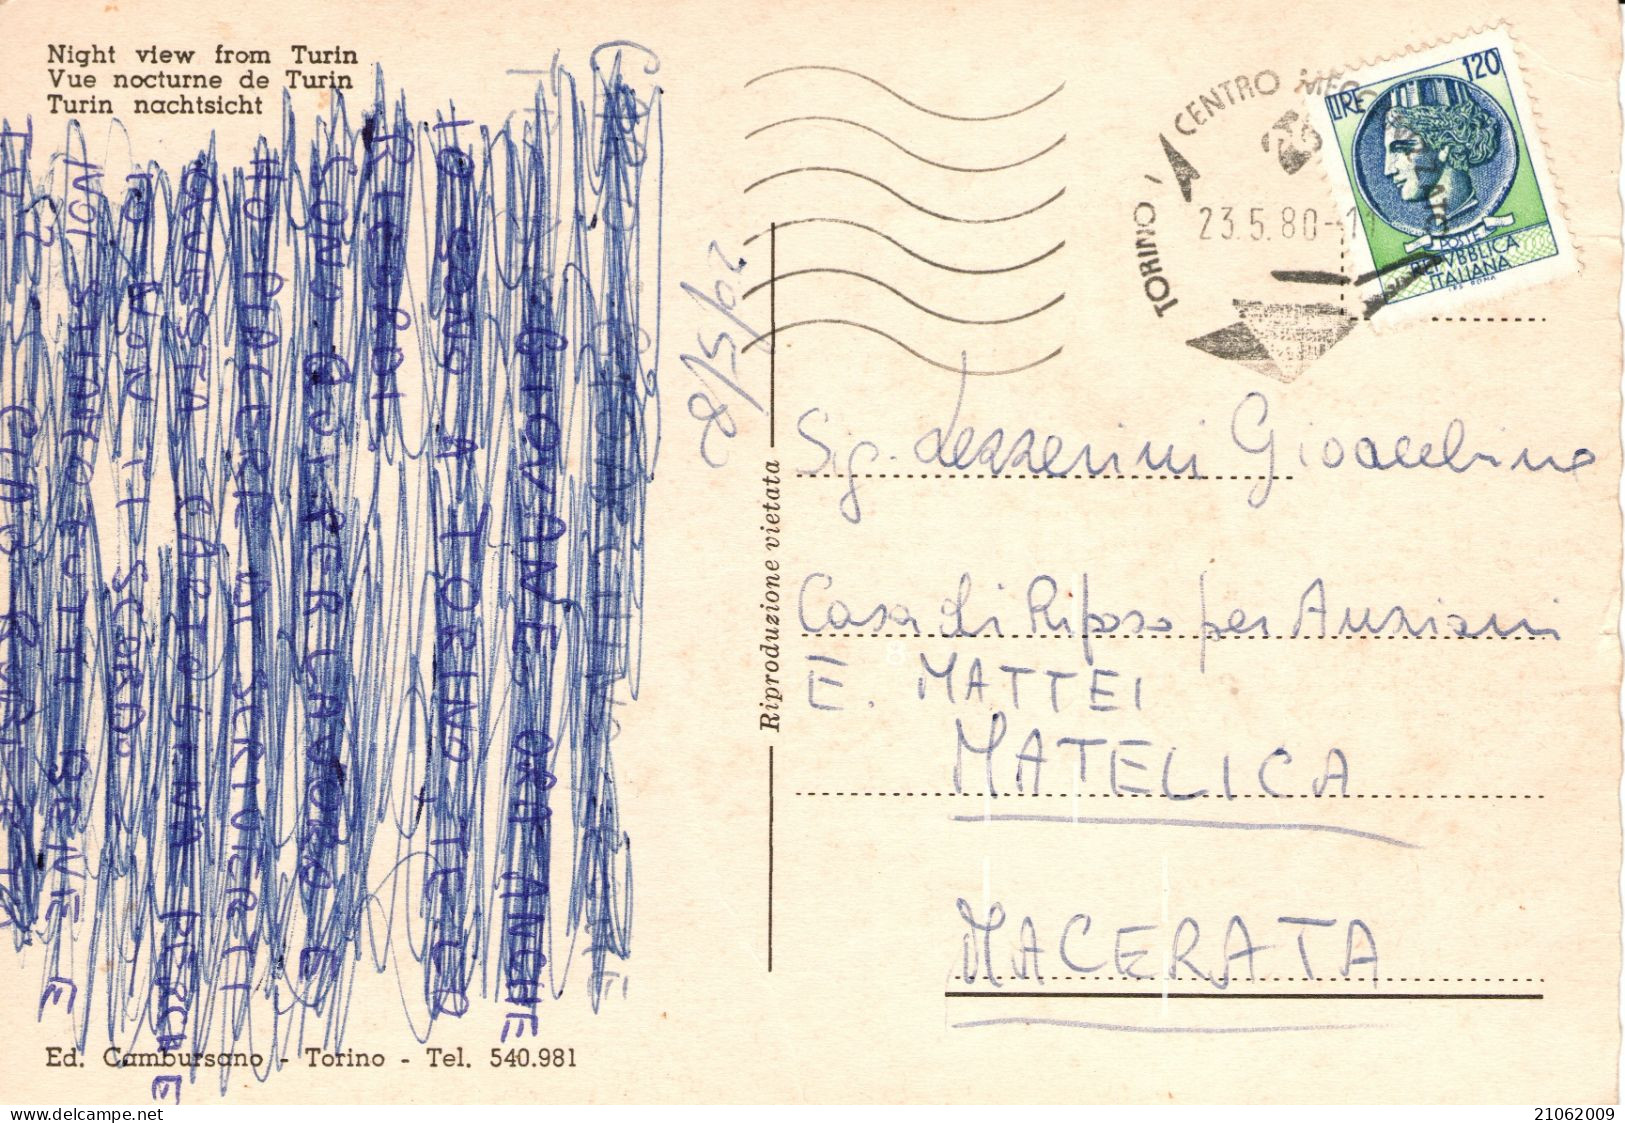 TORINO - VEDUTINE - PIAZZA S. CARLO PALAZZO MADAMA STAZIONE PORTA NUOVA MOLE ANTONELLIANA E PANORAMA - NOTTURNO - V1980 - Panoramic Views